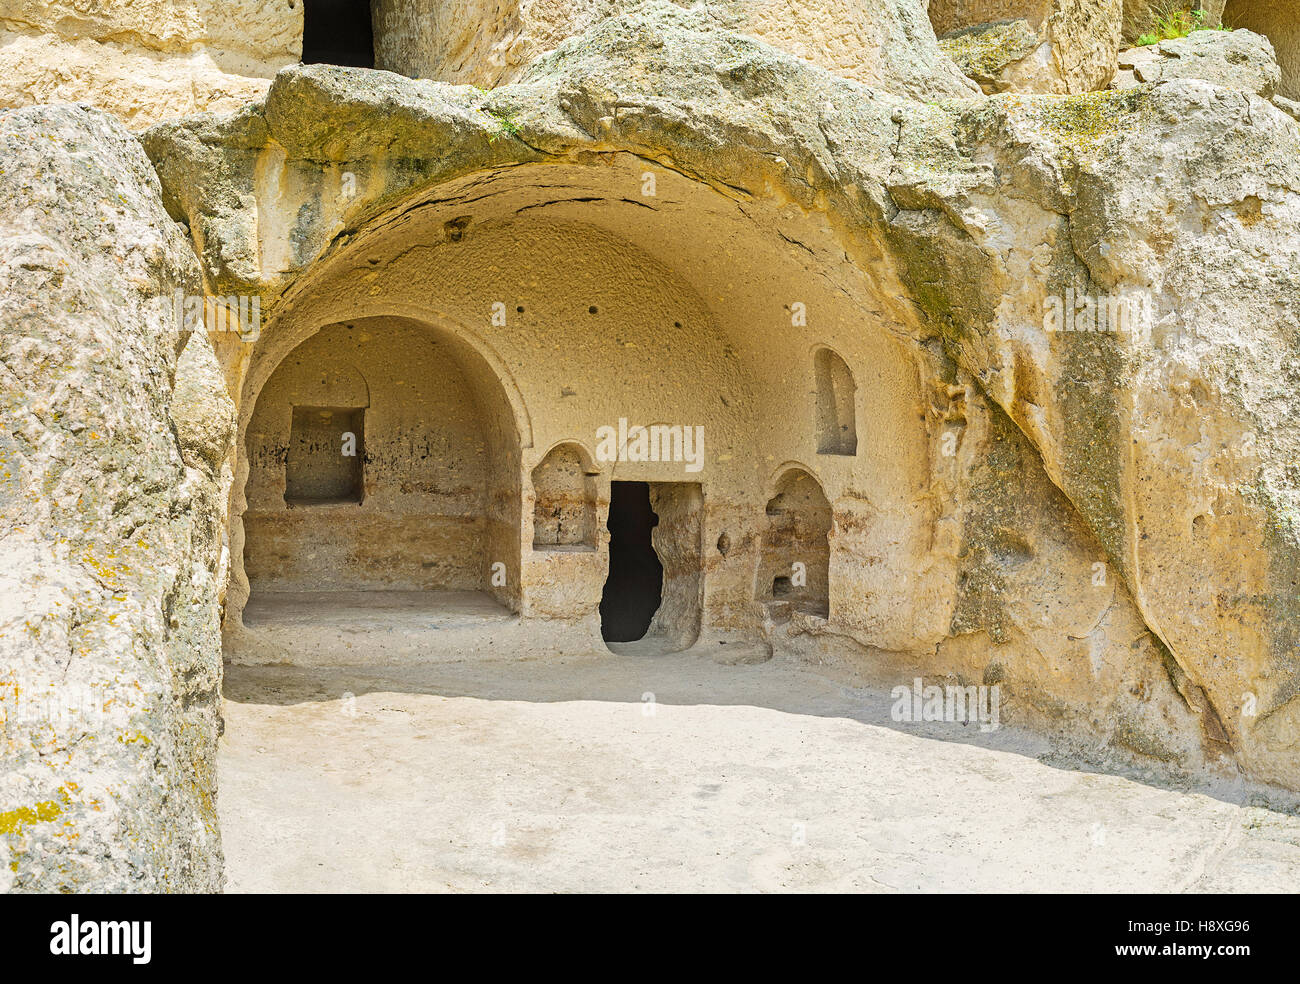 Rientrato in grotte Vardzia sito archeologico sono state utilizzate come rifugi, templi e depositi nel Medioevo, Samtskhe-Javakheti Regione, Georgia Foto Stock